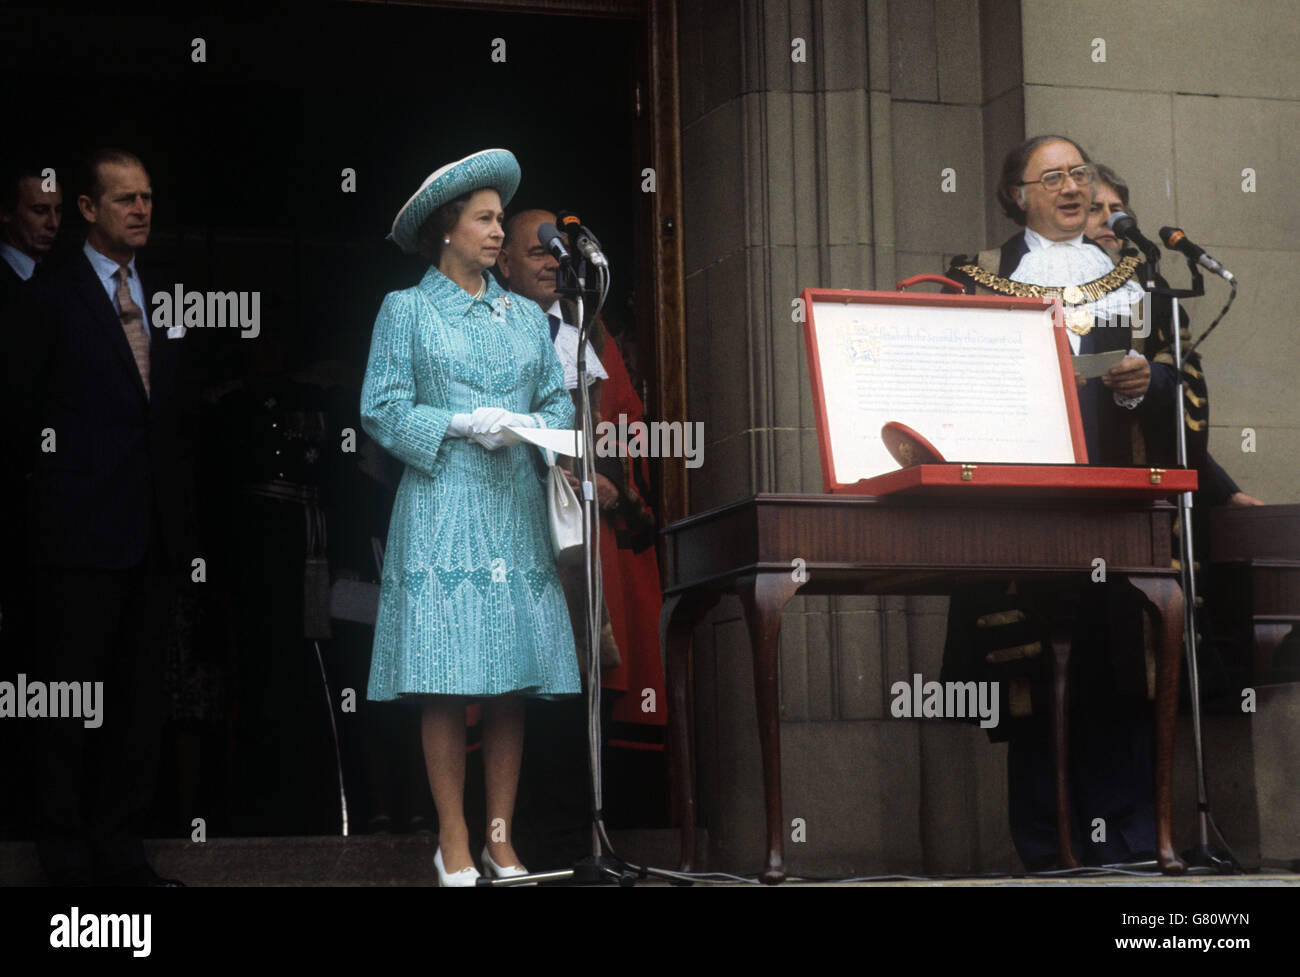 Königin Elizabeth II. Sprach während ihrer Silver Jubilee Tour durch Großbritannien, als sie eine Charta präsentierte, die Derby den Status einer Stadt verliehen hat. Stockfoto